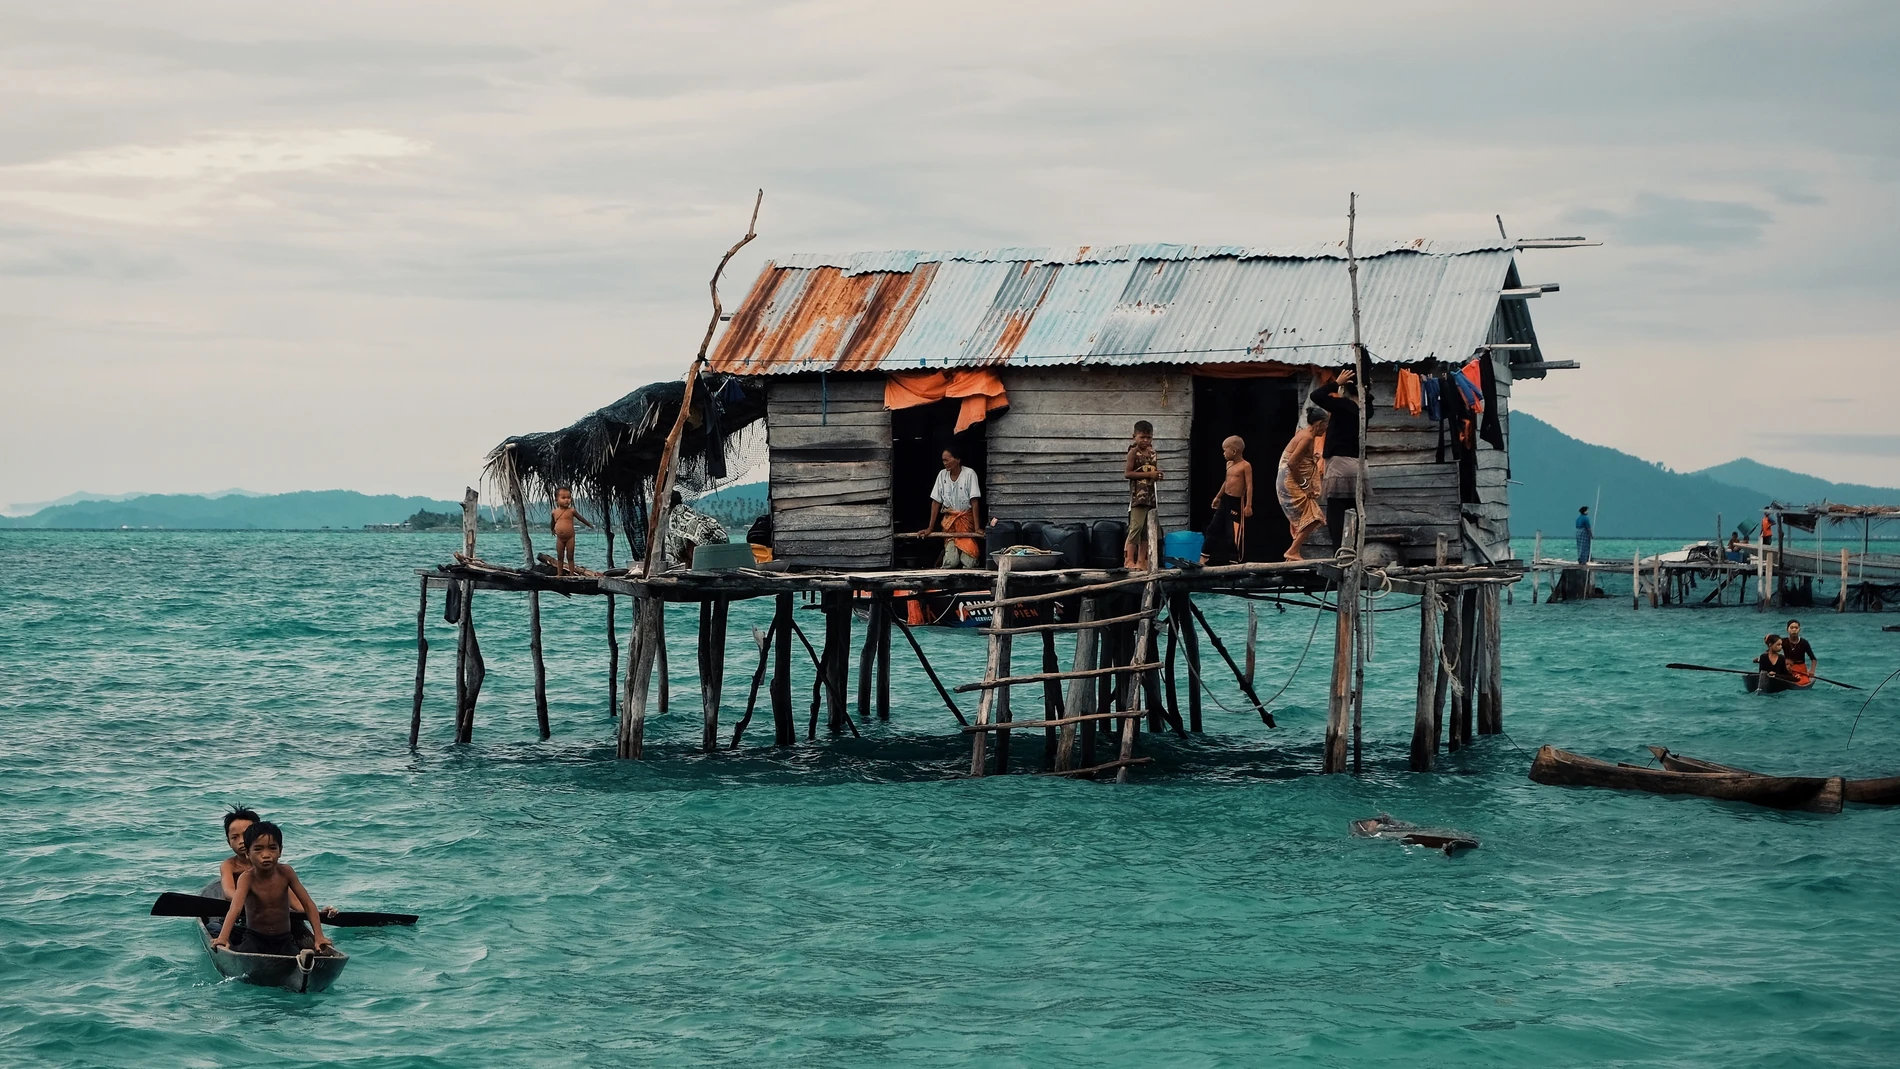 Durante cientos de años, esta tribu ha vivido sobre plataformas flotantes en el mar en las costas de Indonesia y Malasia, y su alimentación ha girado en torno a la pesca buceando a pulmón